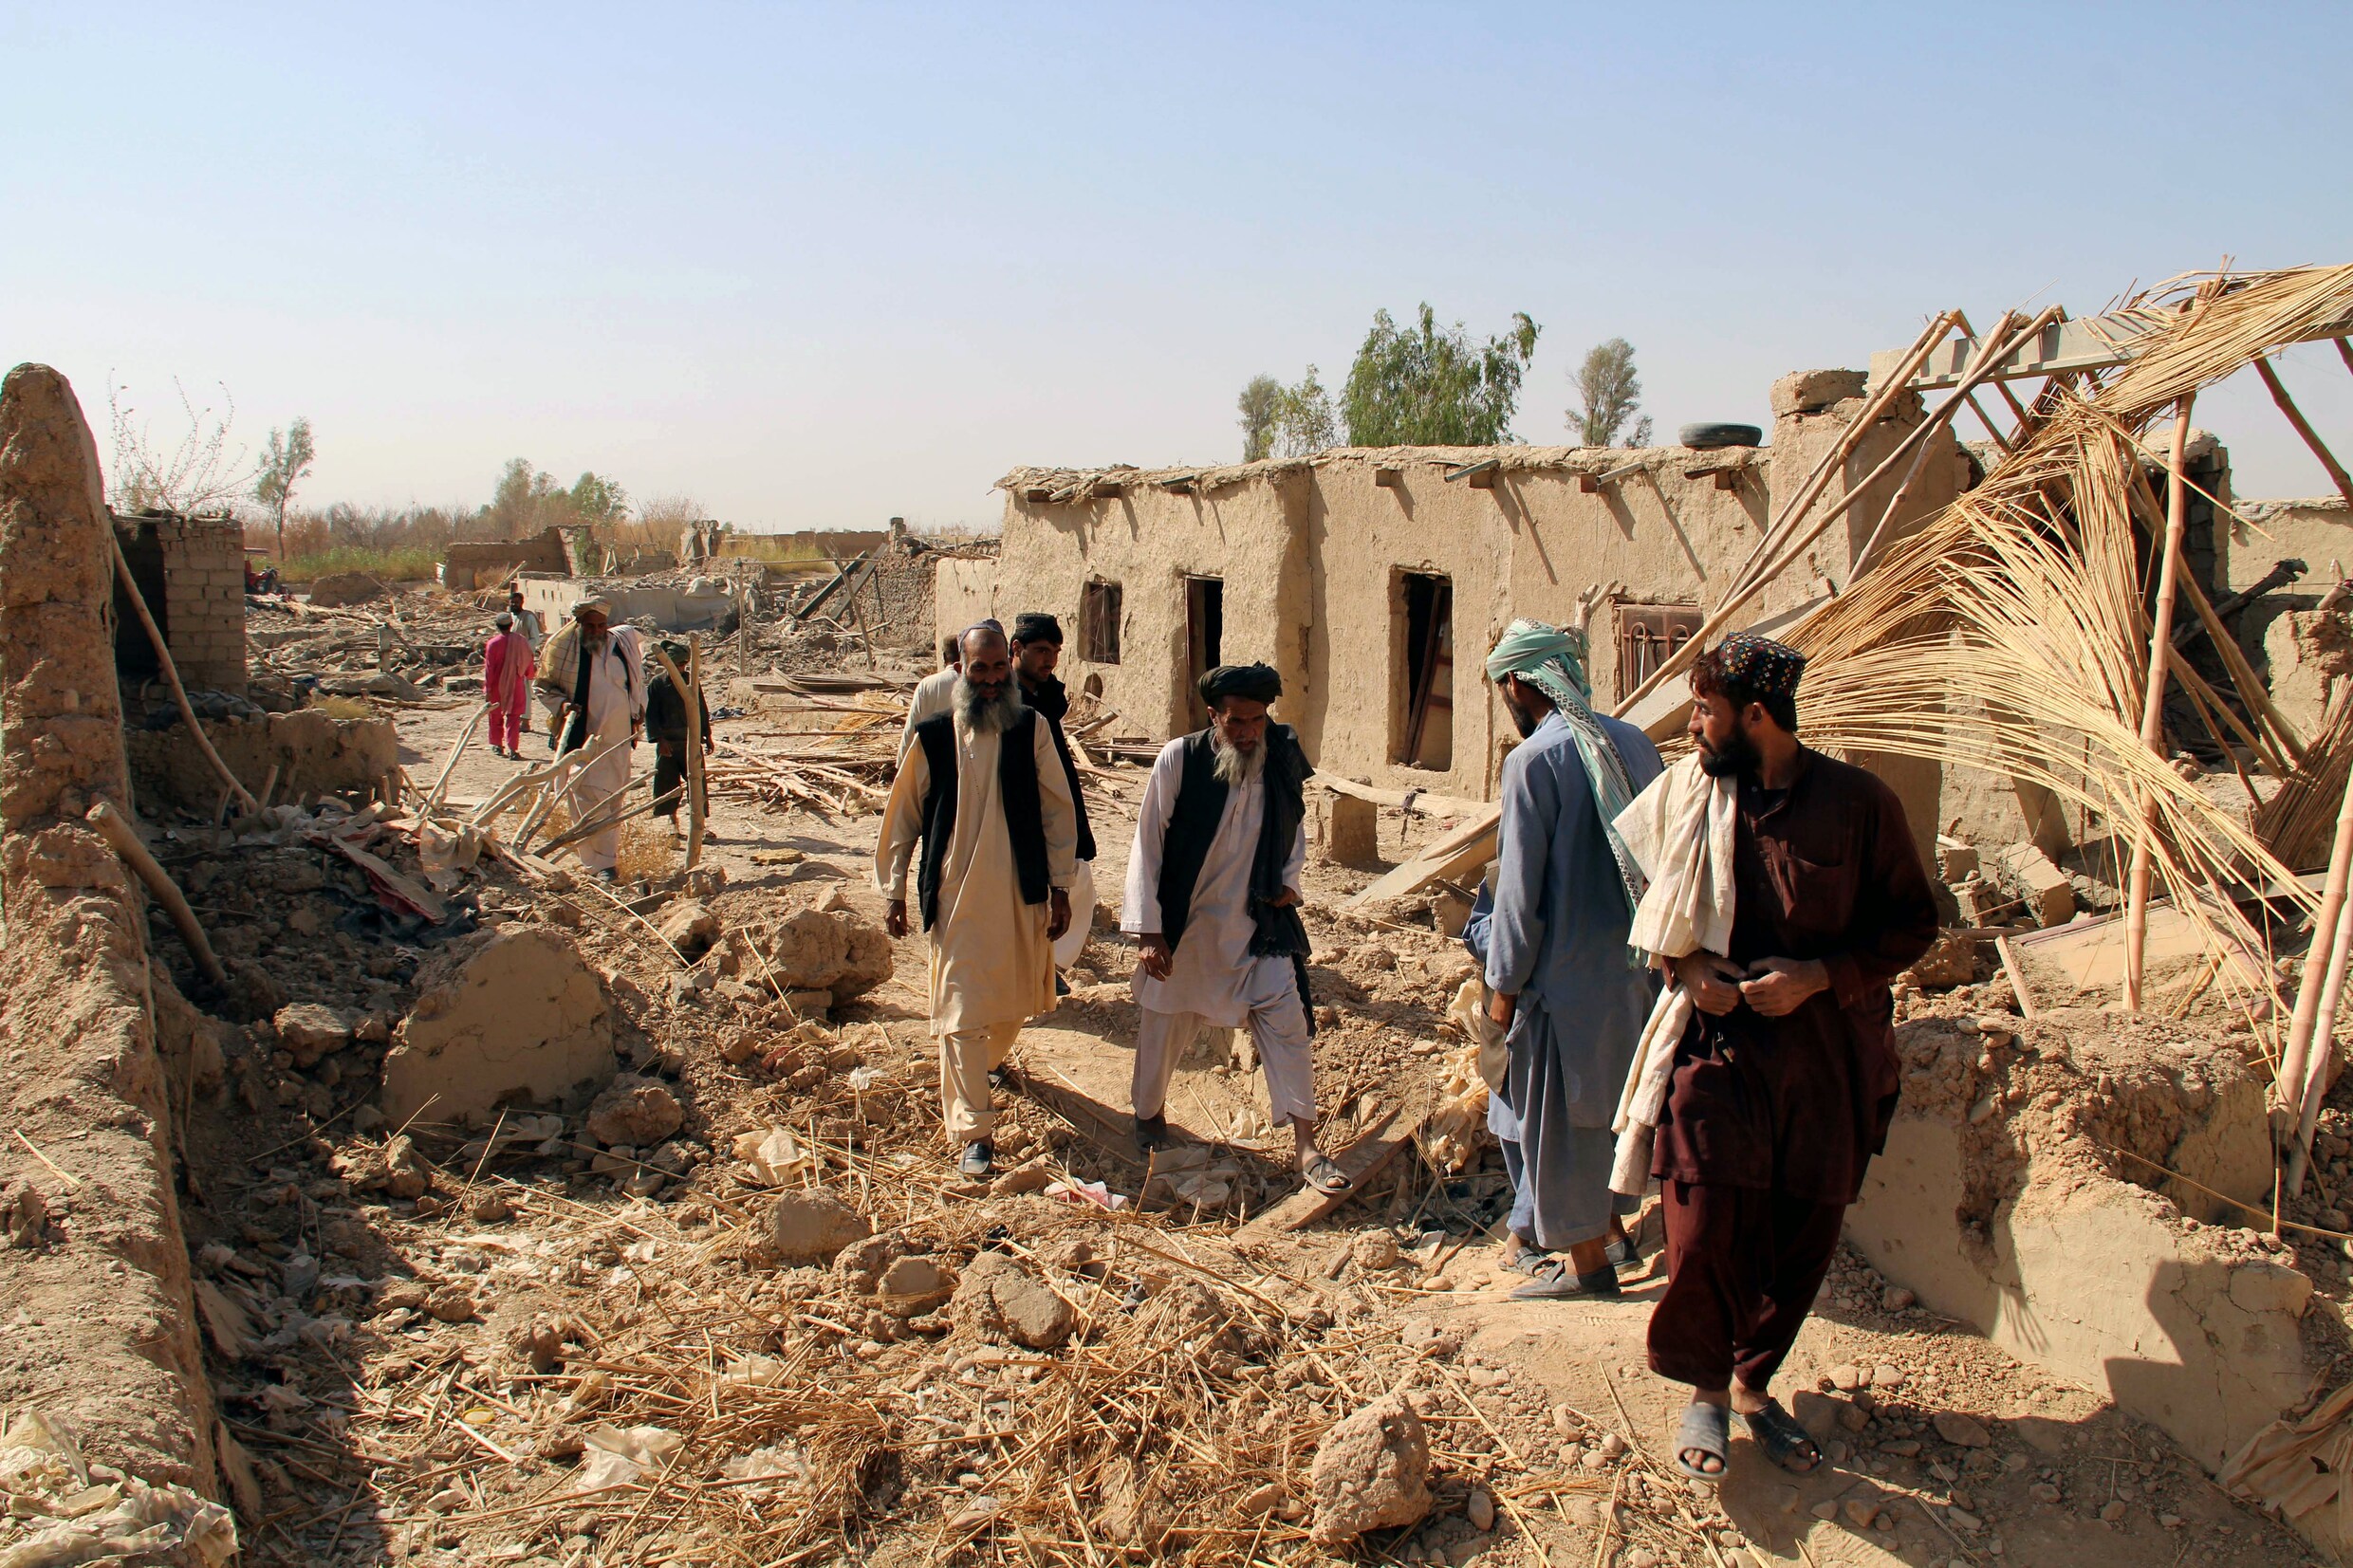 Dodental van aanvallen taliban in Afghanistan stijgt naar 78